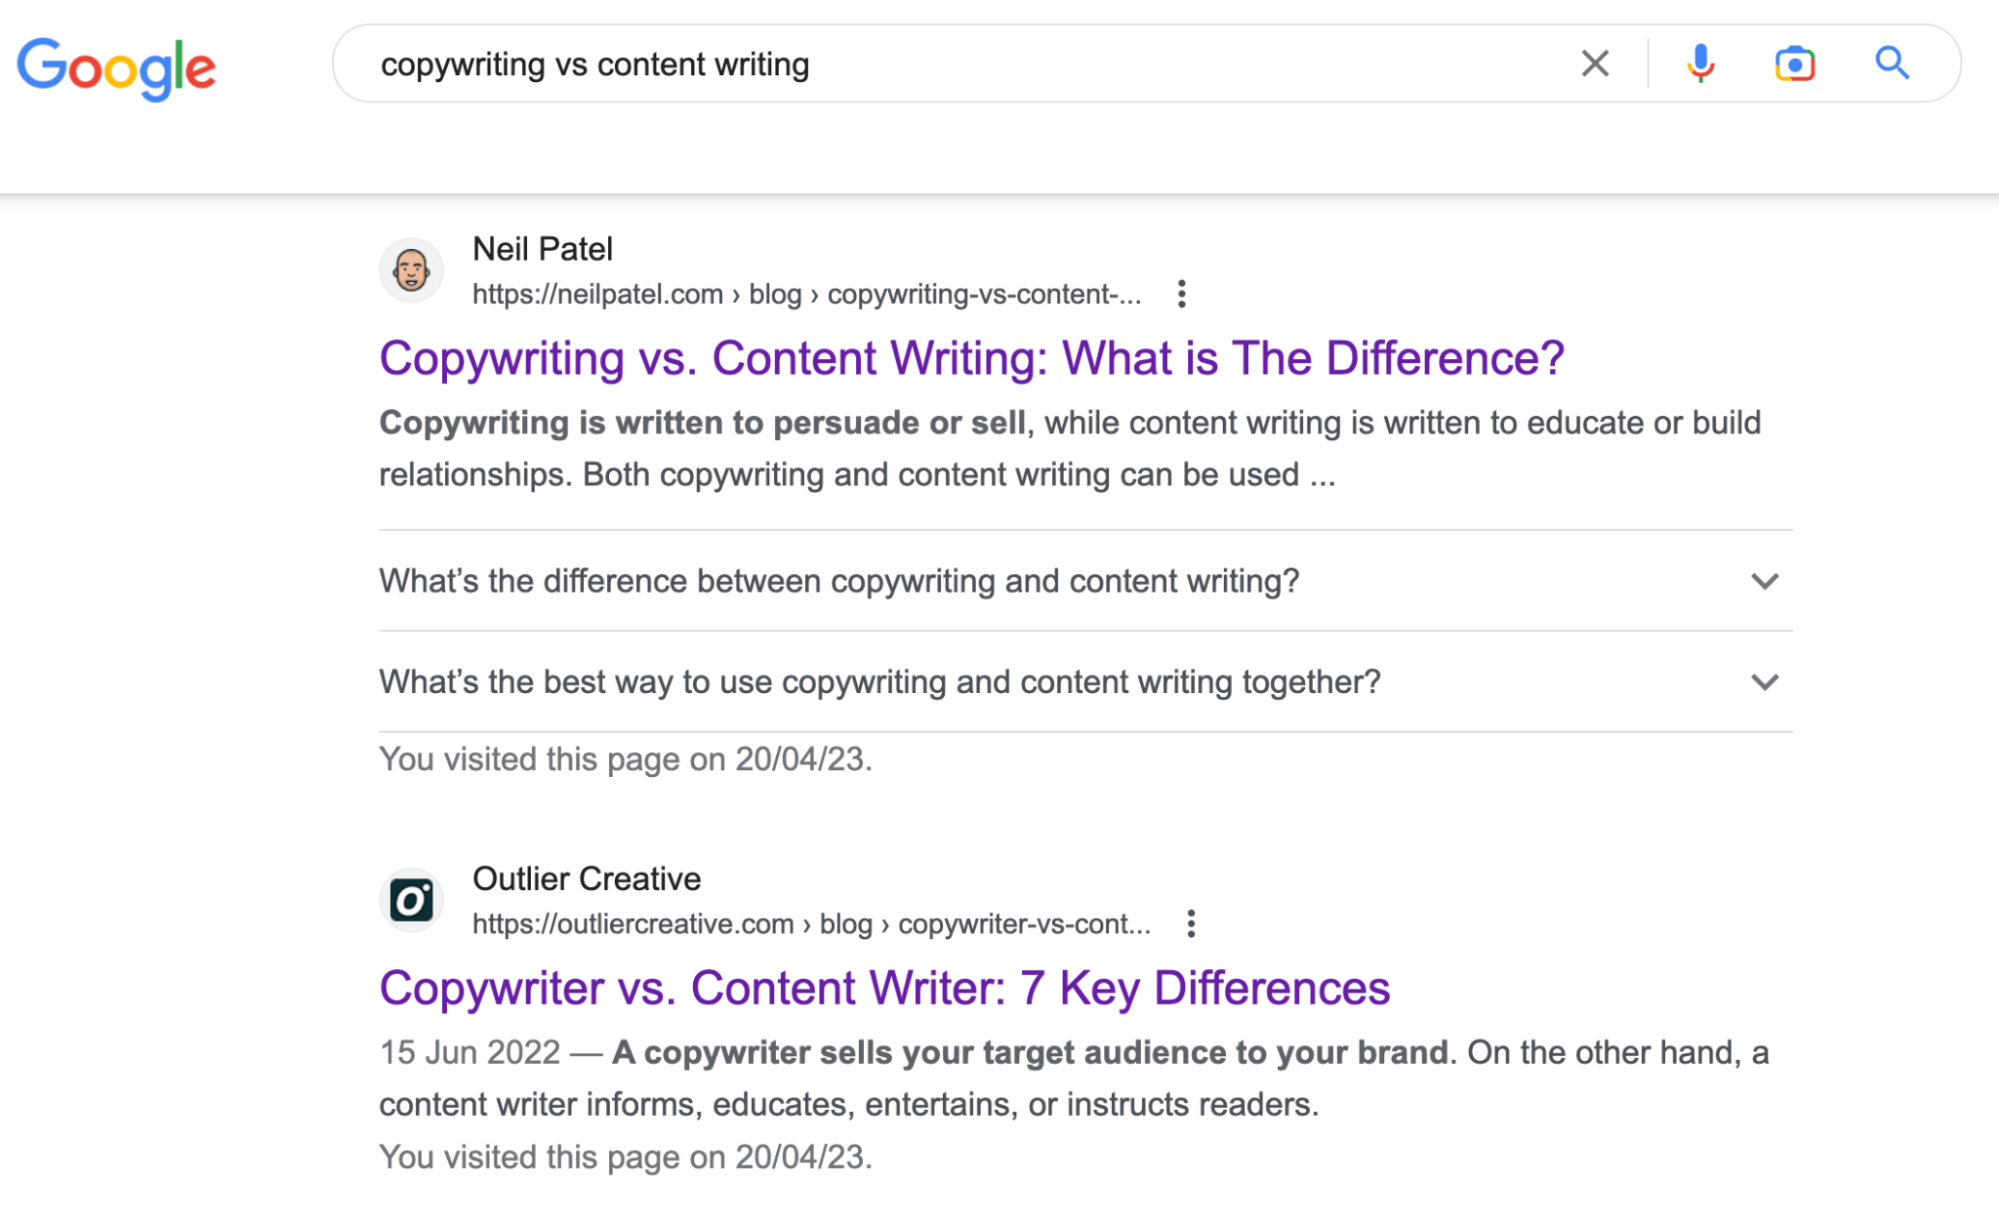 نتایج جستجوی گوگل برای "کپی رایتینگ در مقابل نوشتن محتوا"